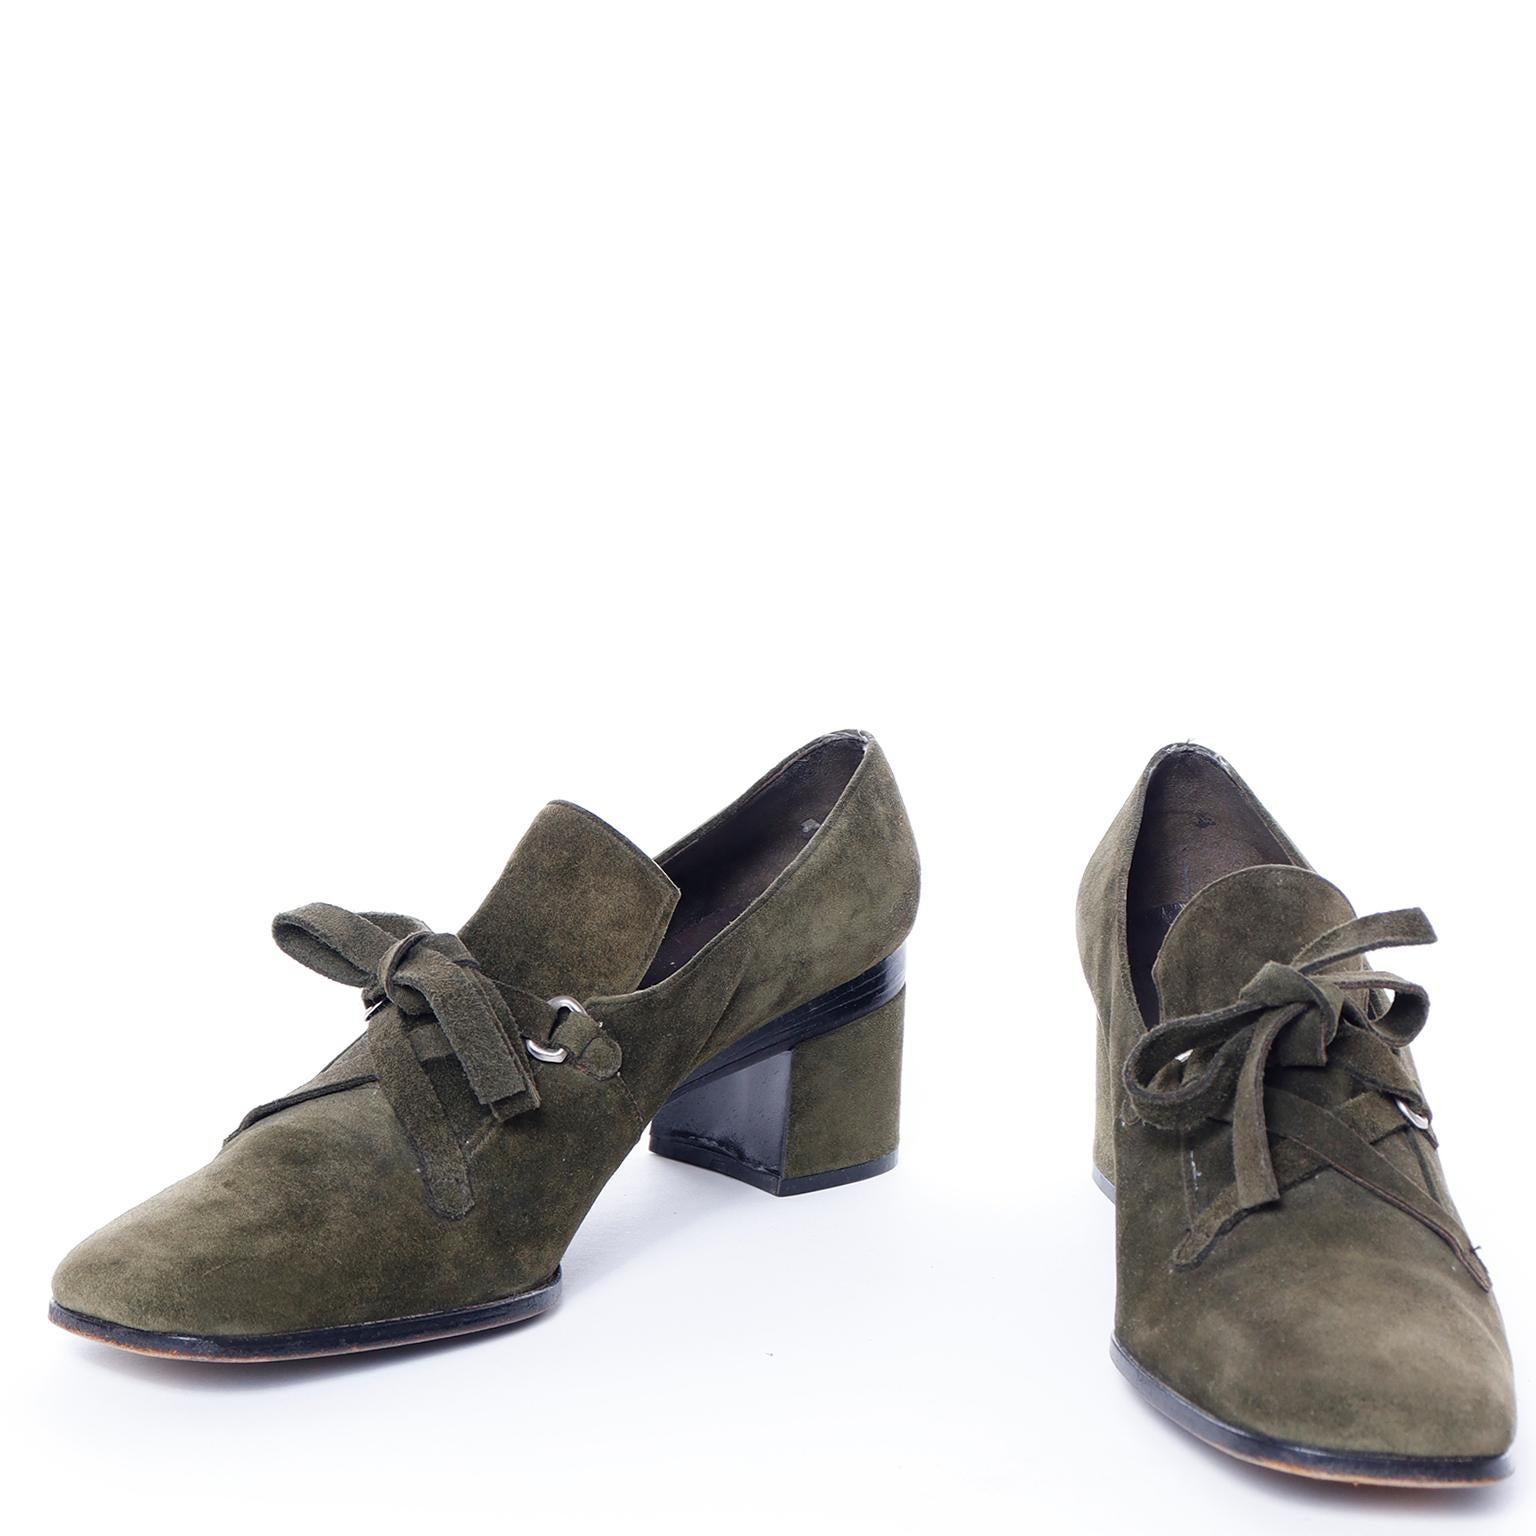 Ces chaussures vintage Charles Jourdan Paris de la fin des années 1970 ont été fabriquées pendant la période la plus importante et la plus populaire de la marque. Charles Jourdan lui-même est décédé en 1976, mais lorsque son fils Roland Jourdan a